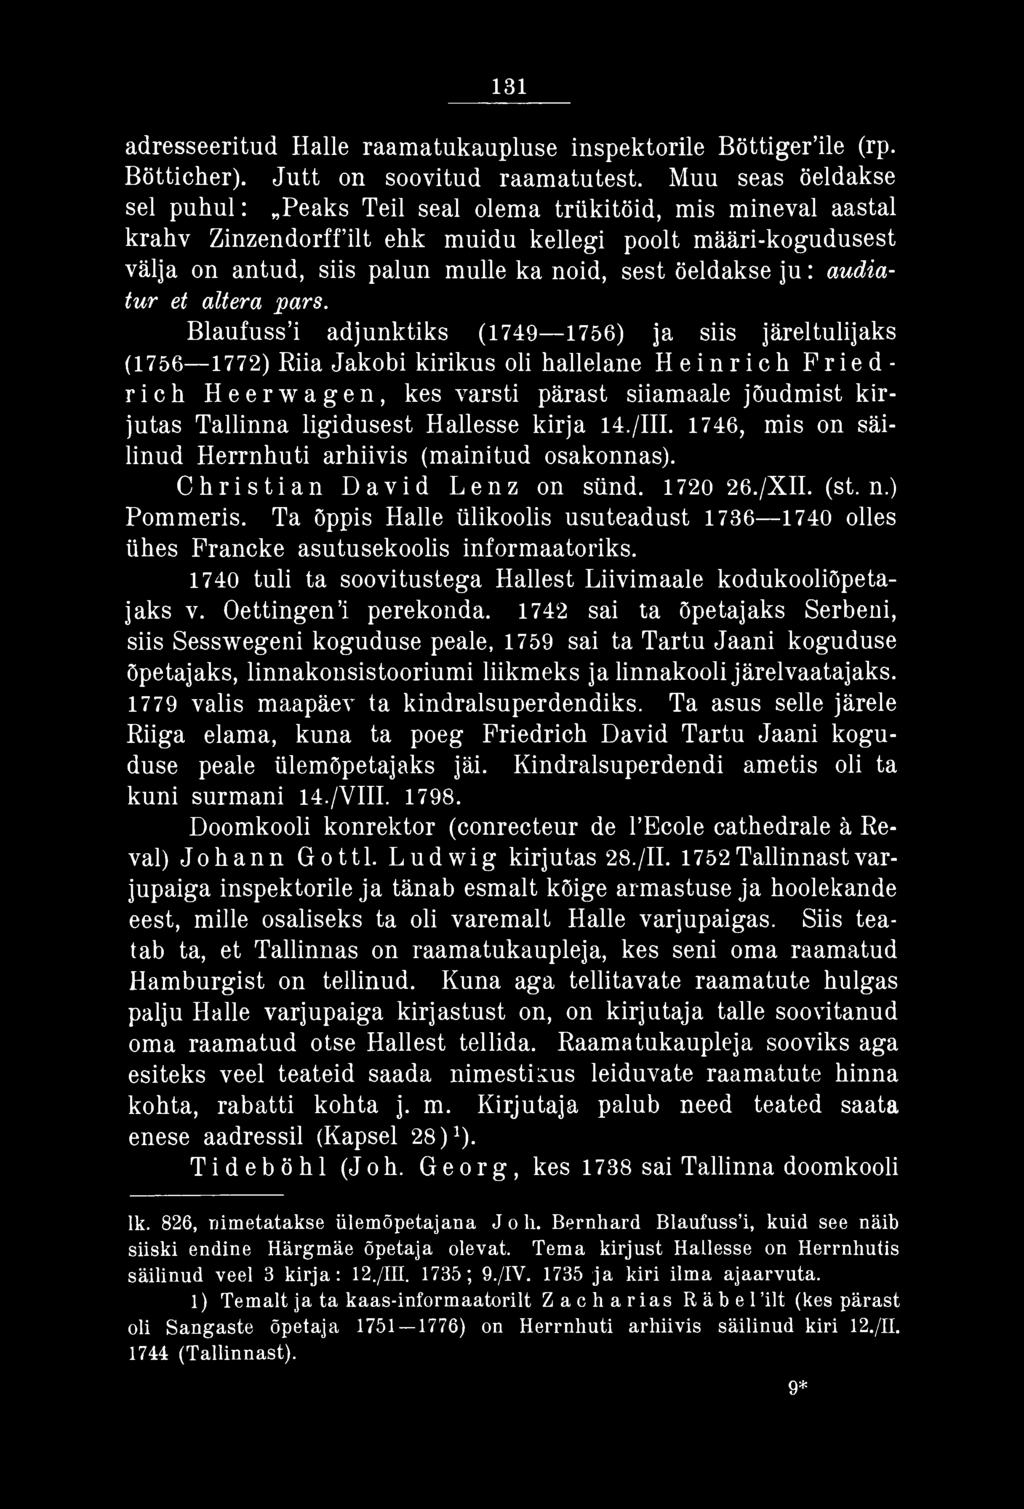 Hallesse kirja 14./III. 1746, mis on säilinud Herrnhuti arhiivis (mainitud osakonnas). Christian David Lenz on sünd. 1720 26./XII. (st. n.) Pommeris.